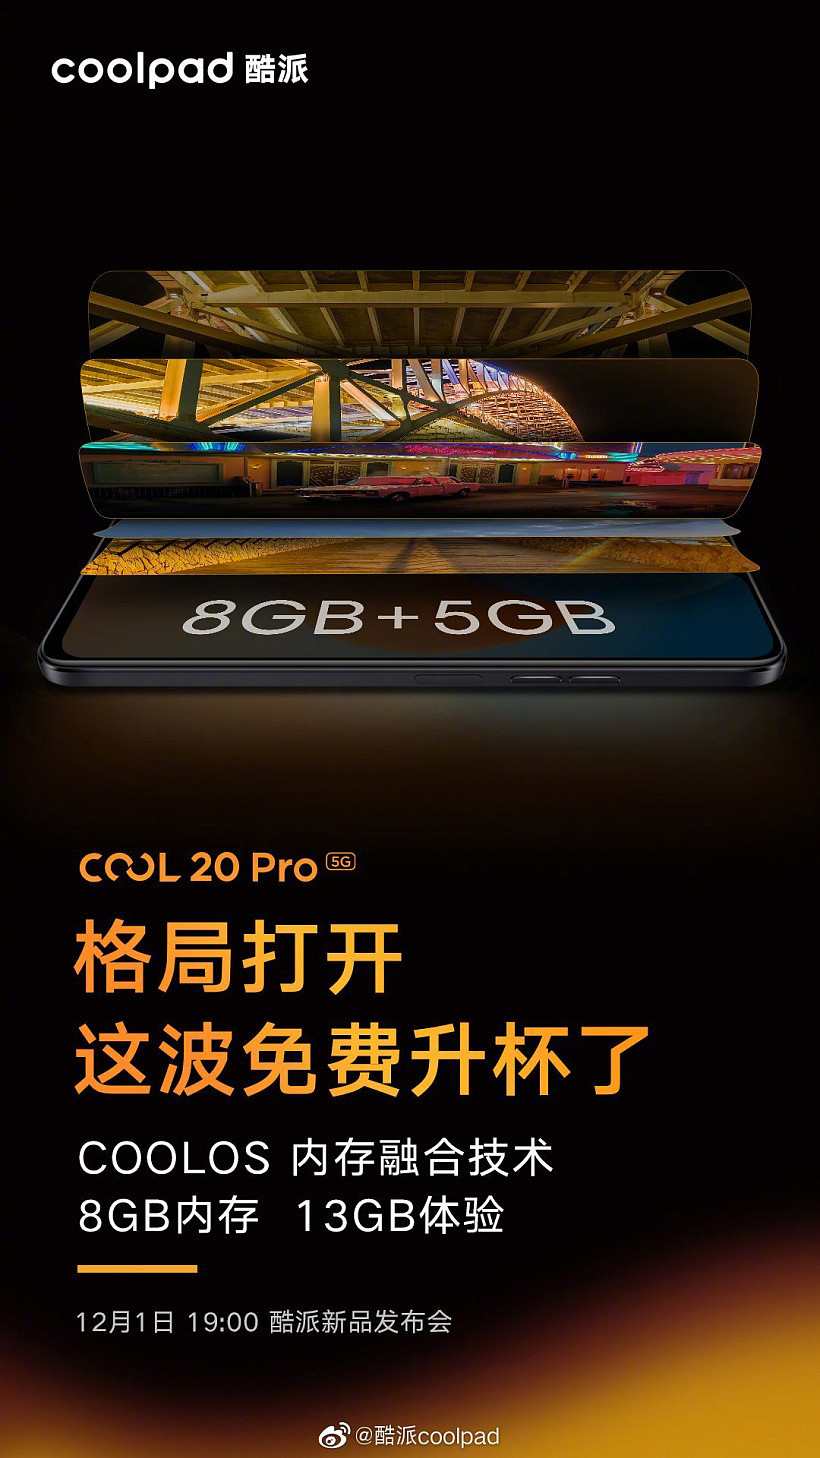 酷派 COOL 20 Pro 预热：COOLOS 内存融合技术，8GB 内存拥有 13GB 体验 - 1